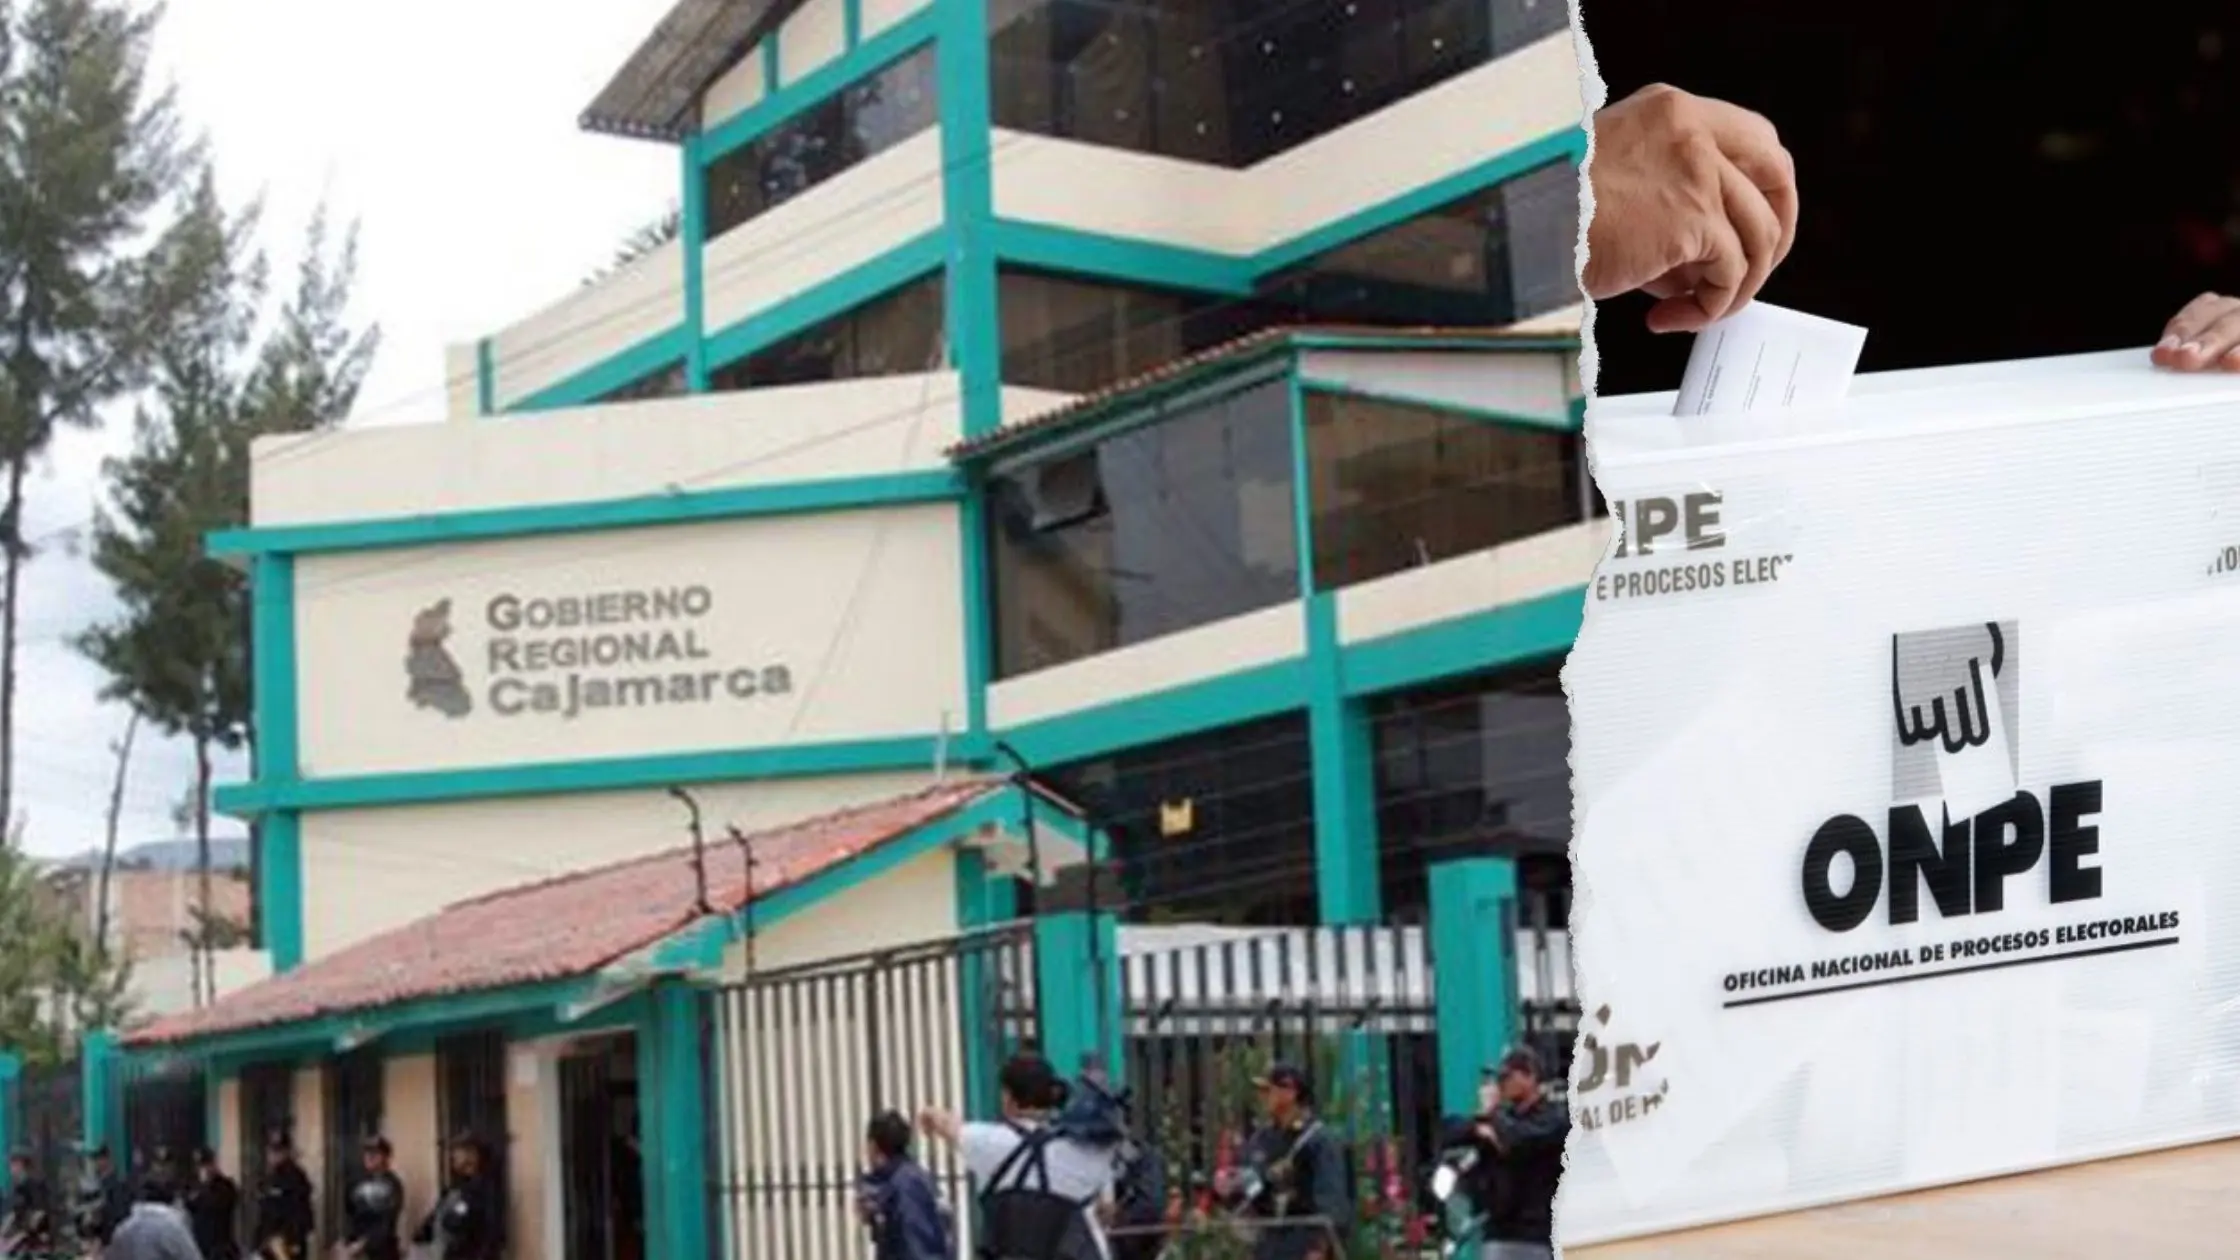 Alcaldes y ex congresistas se perfilan como candidatos a la gobernación regional de Cajamarca